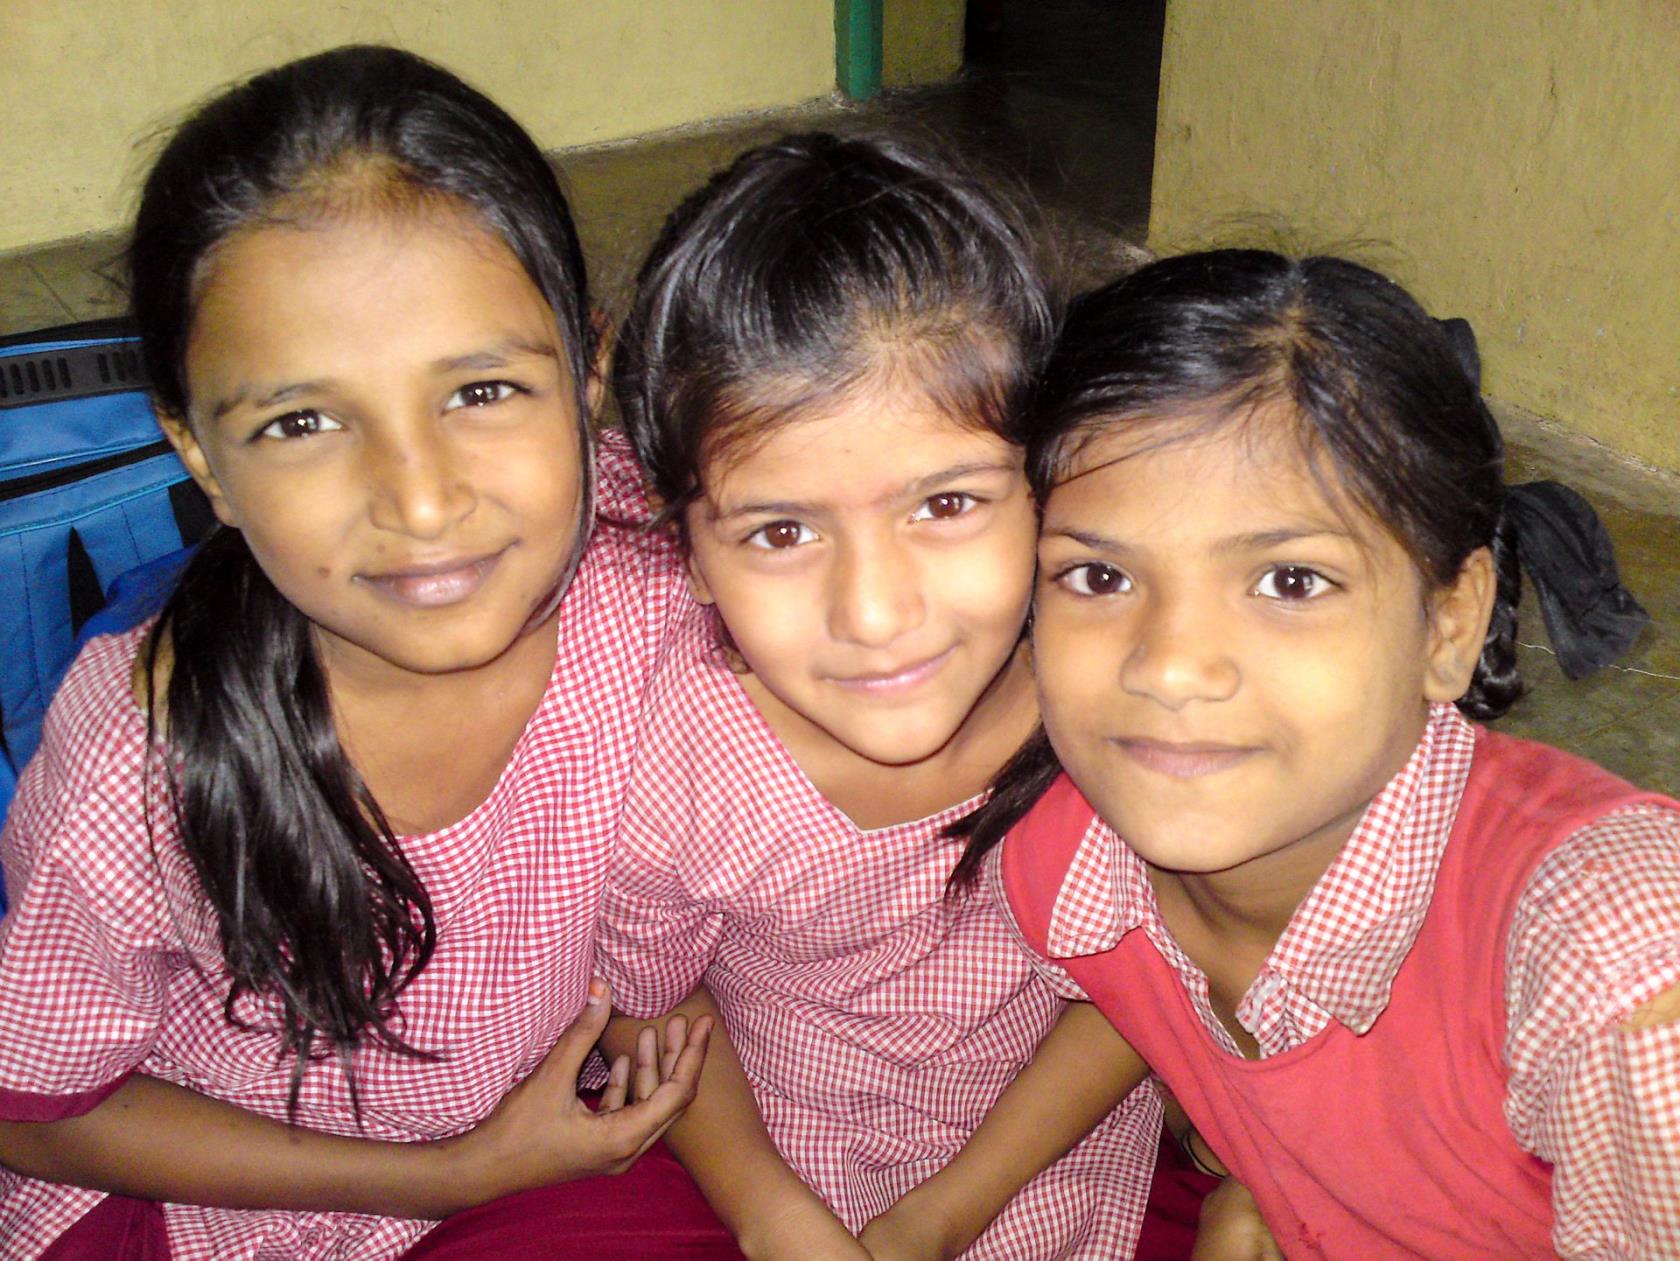 I Aman Shantis skola får barnen lära sig om alla människors lika värde. Svenska kyrkan stöder Henry Martin Institutes arbete för försoning, fred och samförstånd mellan människor av olika tro i Indien.